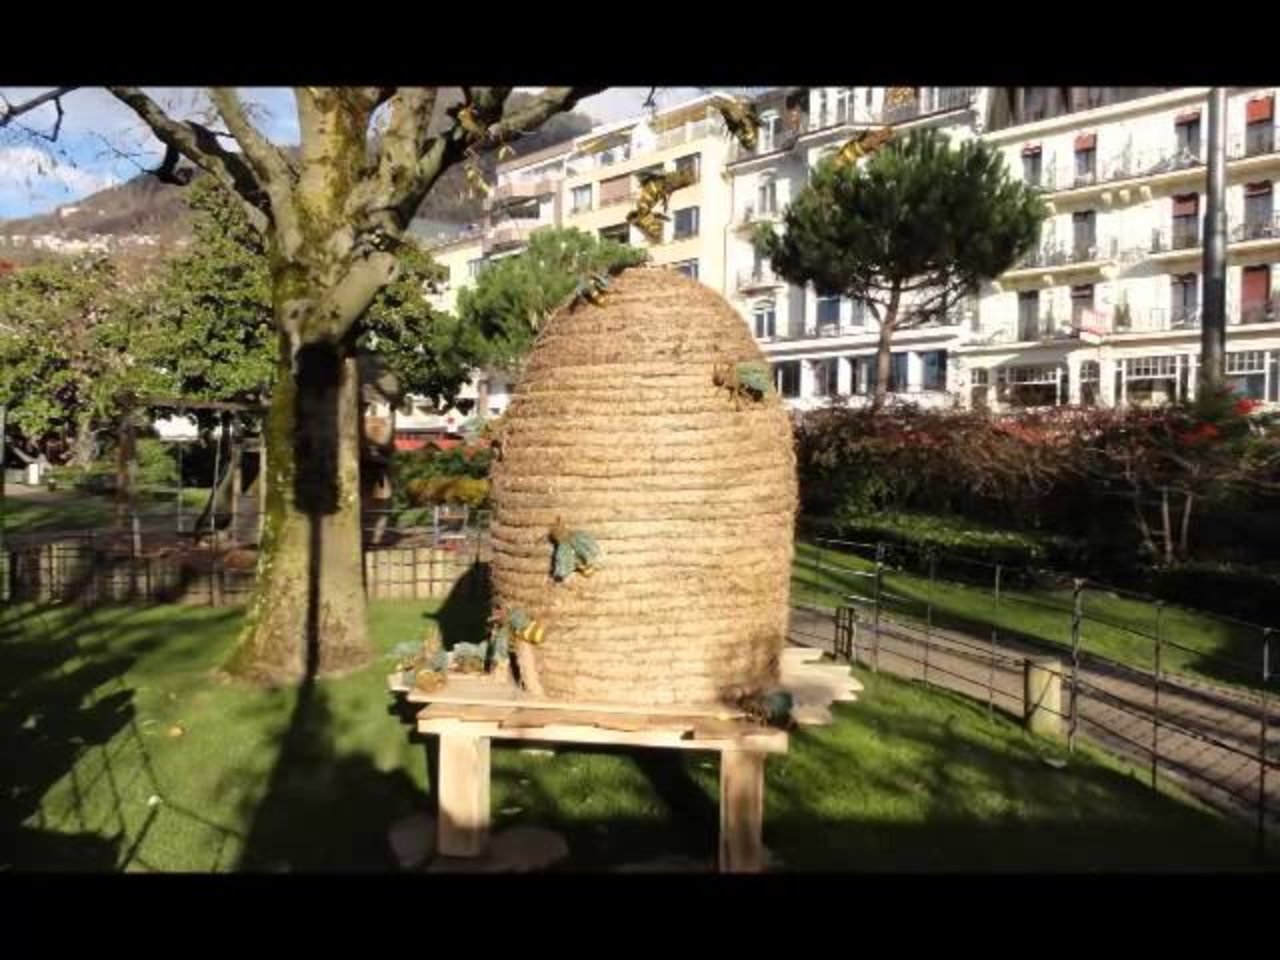 Montreux Sculptures végétales - 2014/2015